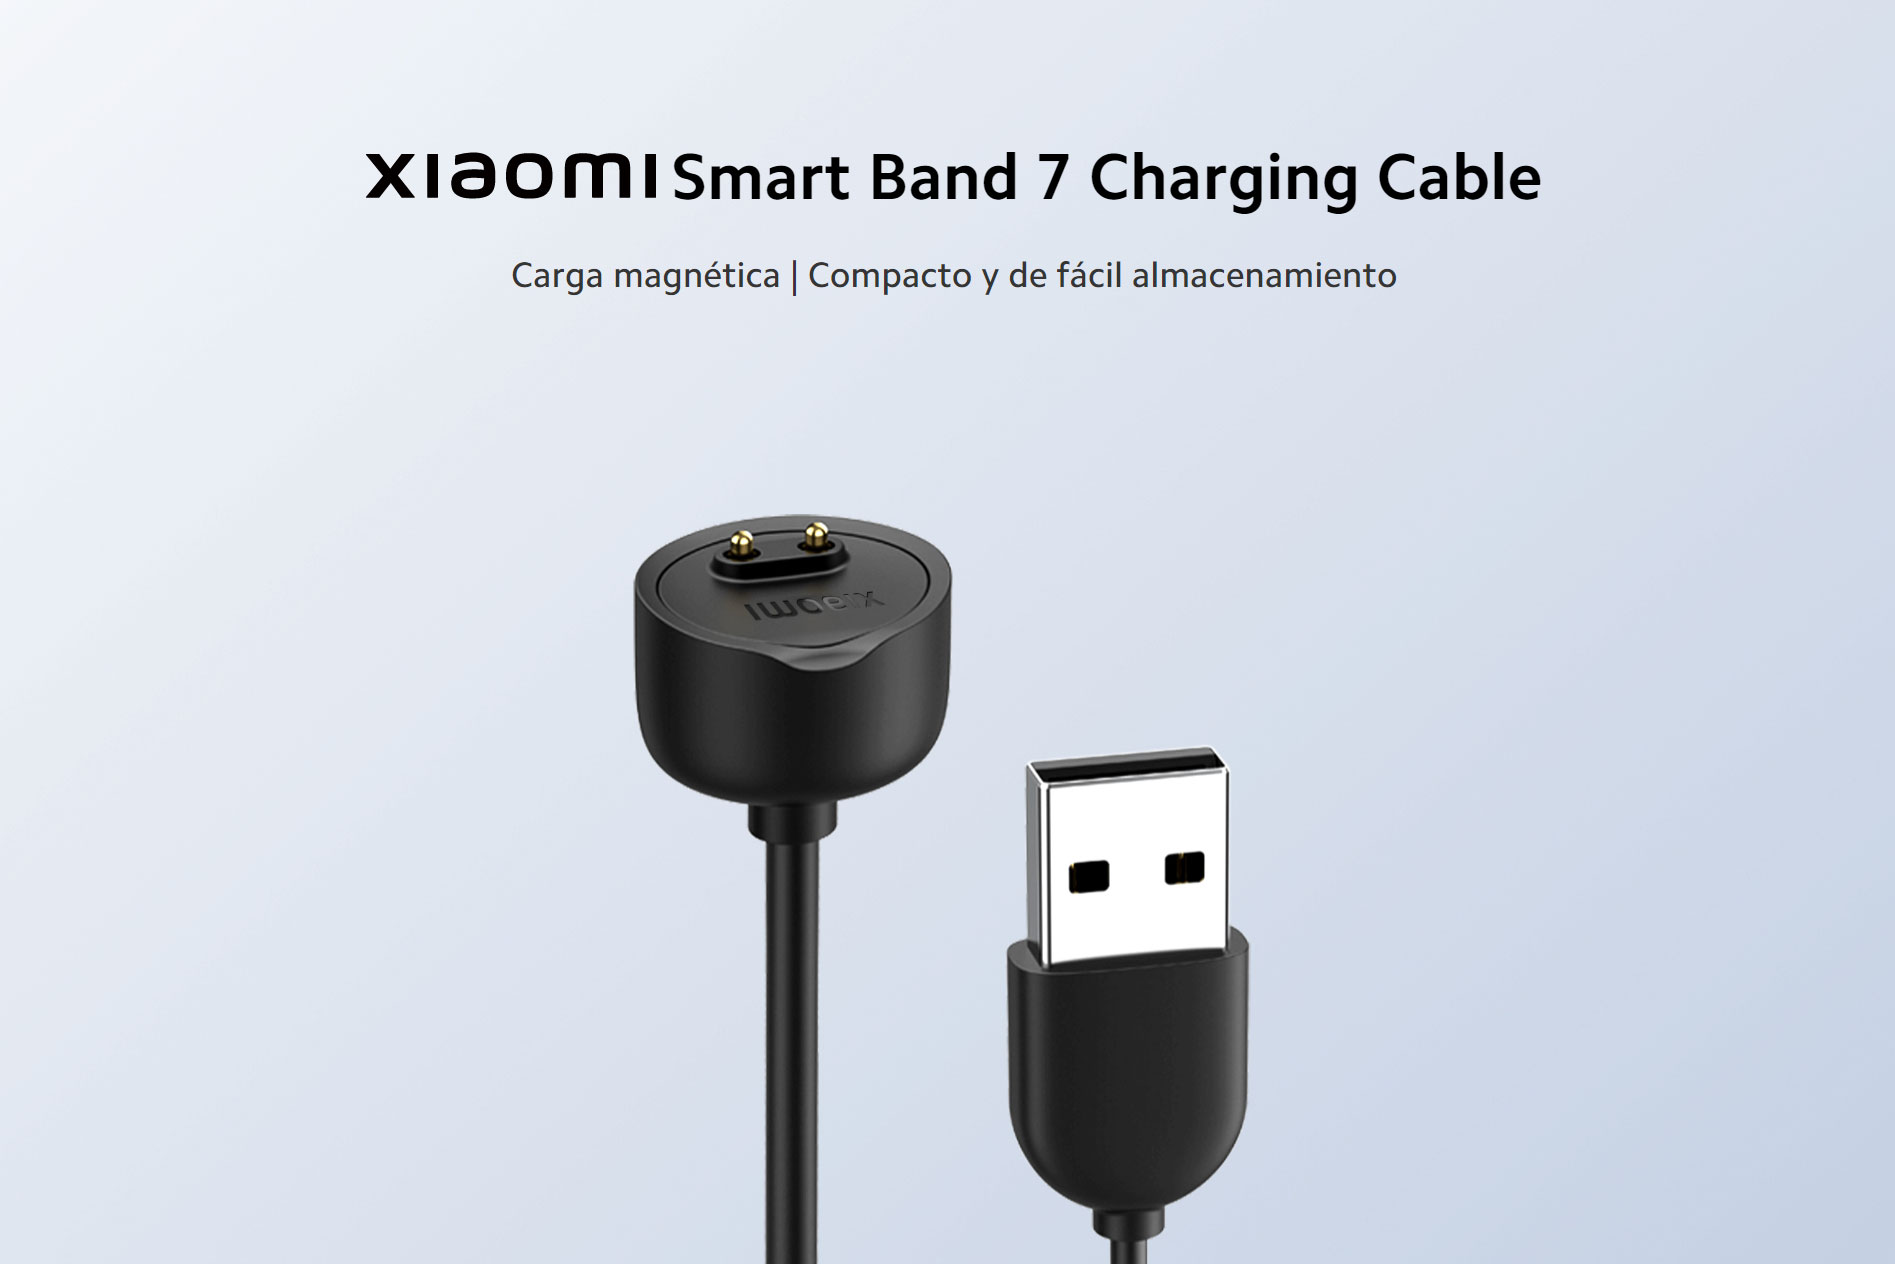 Cable De Carga Usb Para Xiaomi Mi Band 5 Y 6 con Ofertas en